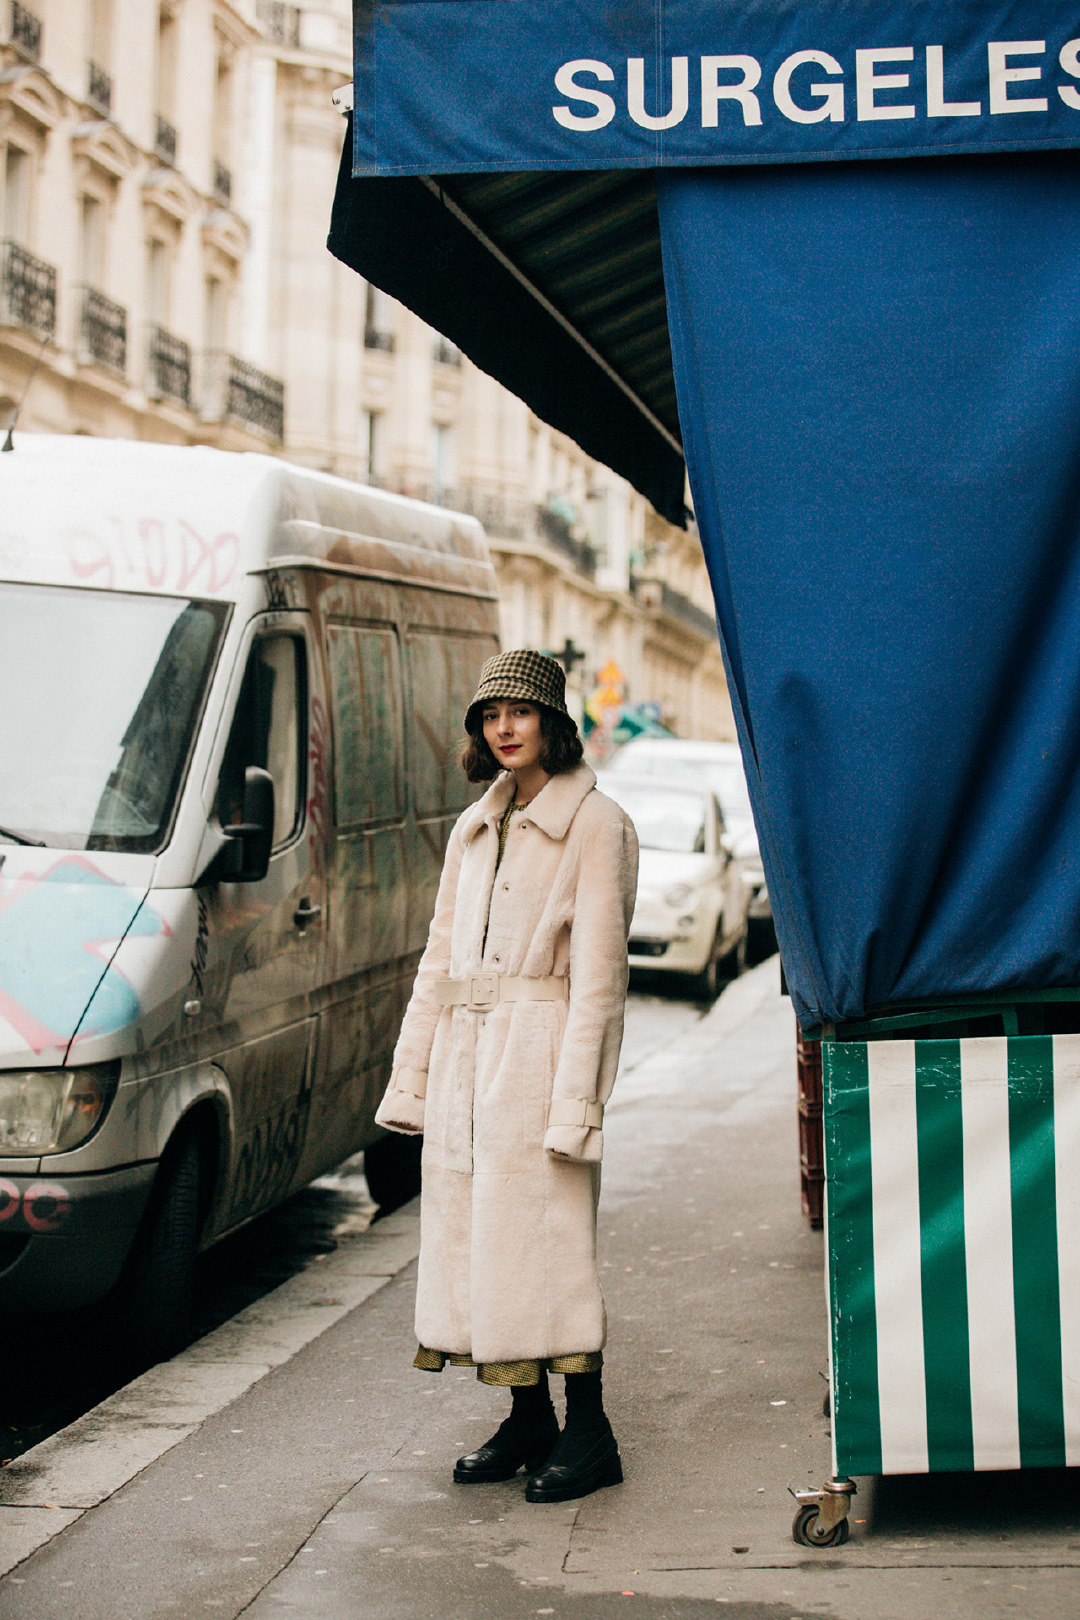 Sokak Stili: 2019-20 Sonbahar/Kış Paris Moda Haftası 5. Gün